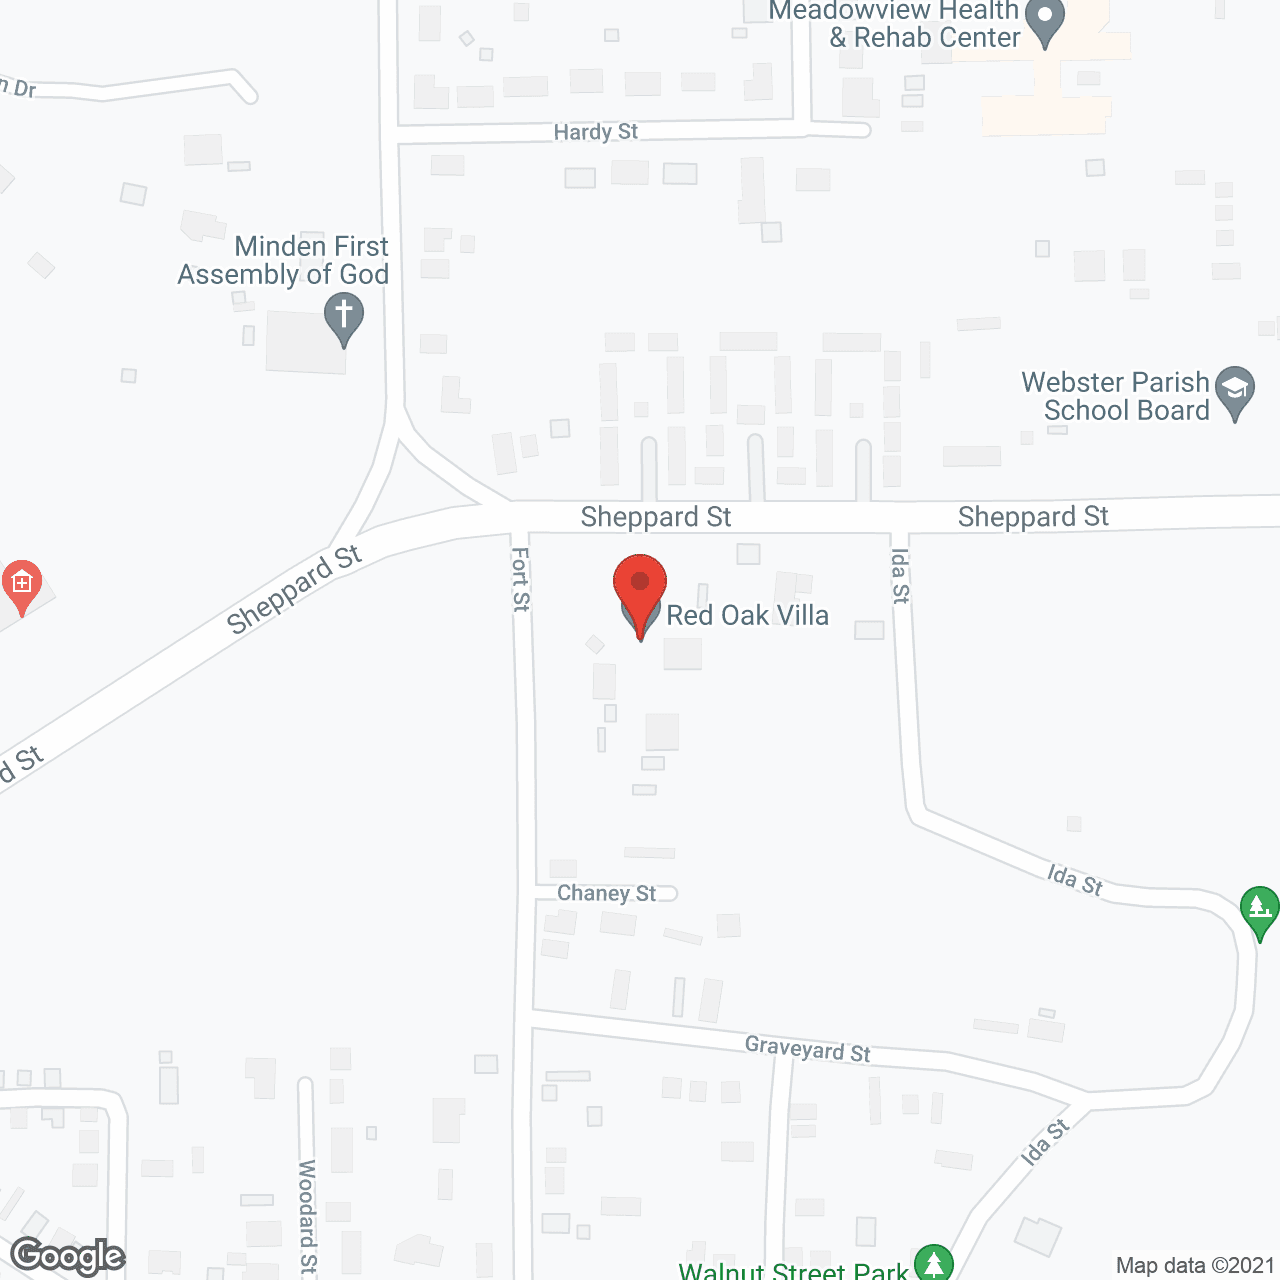 Red Oak Villa in google map